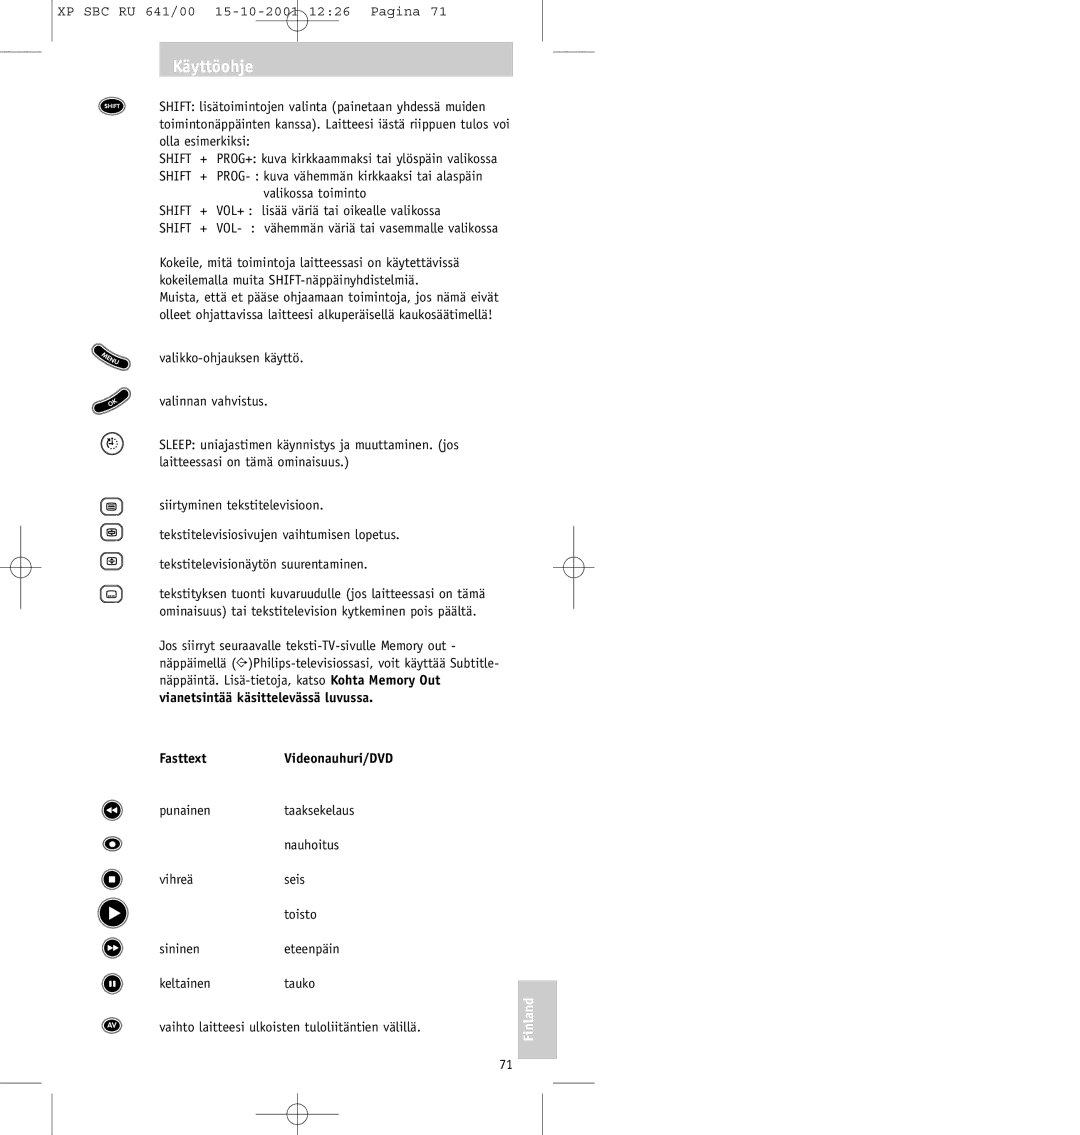 Philips SBC RU641/00 manual Vianetsintää käsittelevässä luvussa Fasttext 